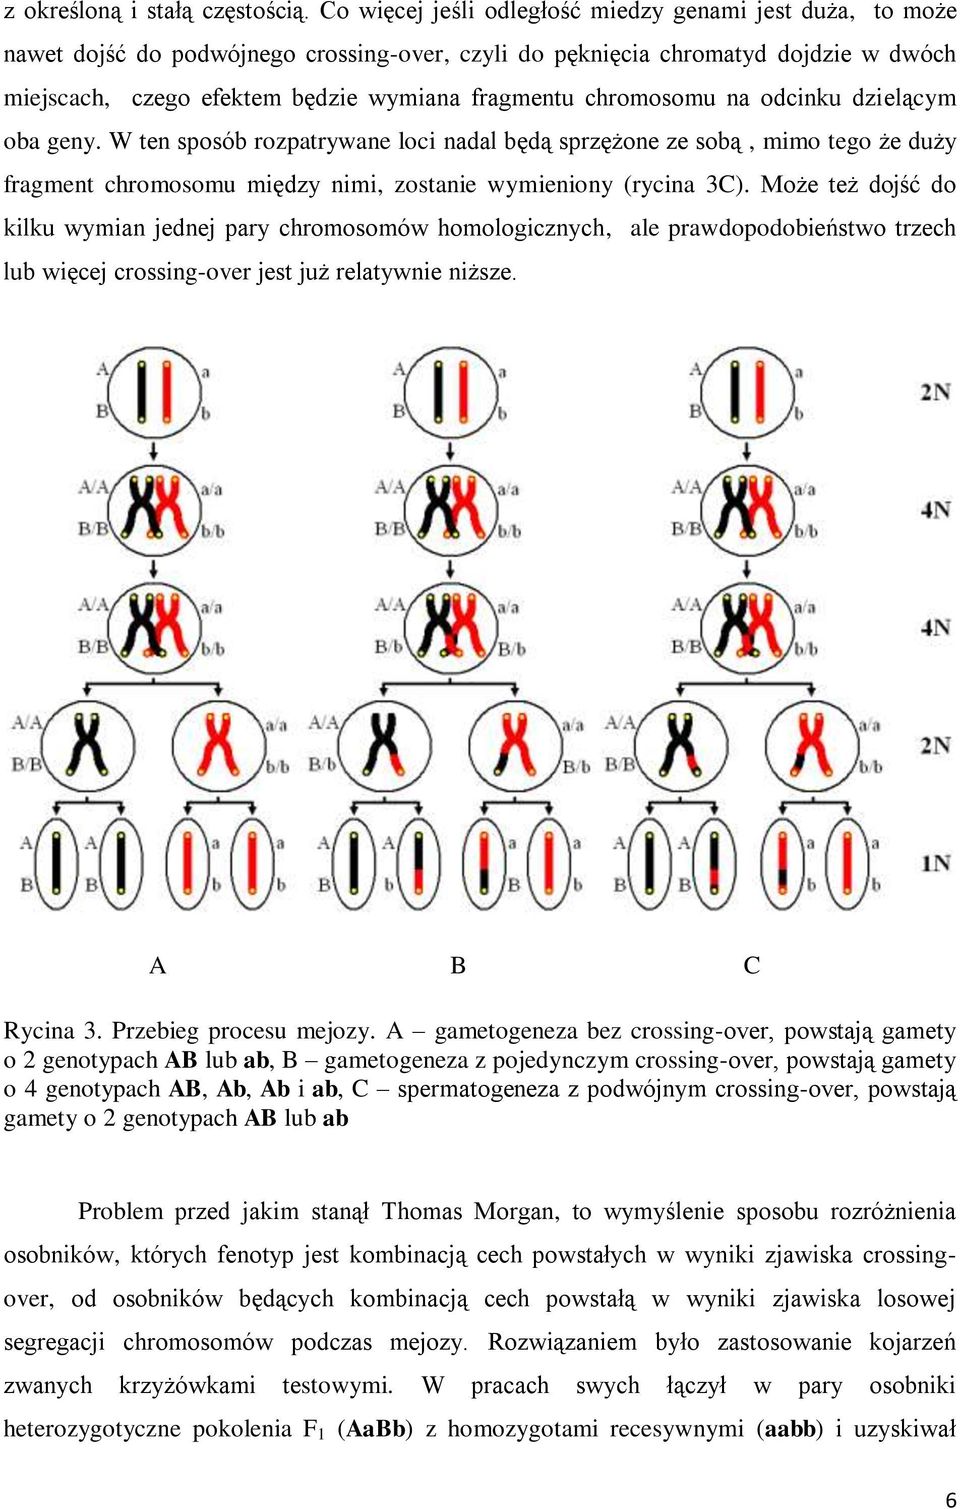 chromosomu na odcinku dzielącym oba geny. W ten sposób rozpatrywane loci nadal będą sprzężone ze sobą, mimo tego że duży fragment chromosomu między nimi, zostanie wymieniony (rycina 3C).